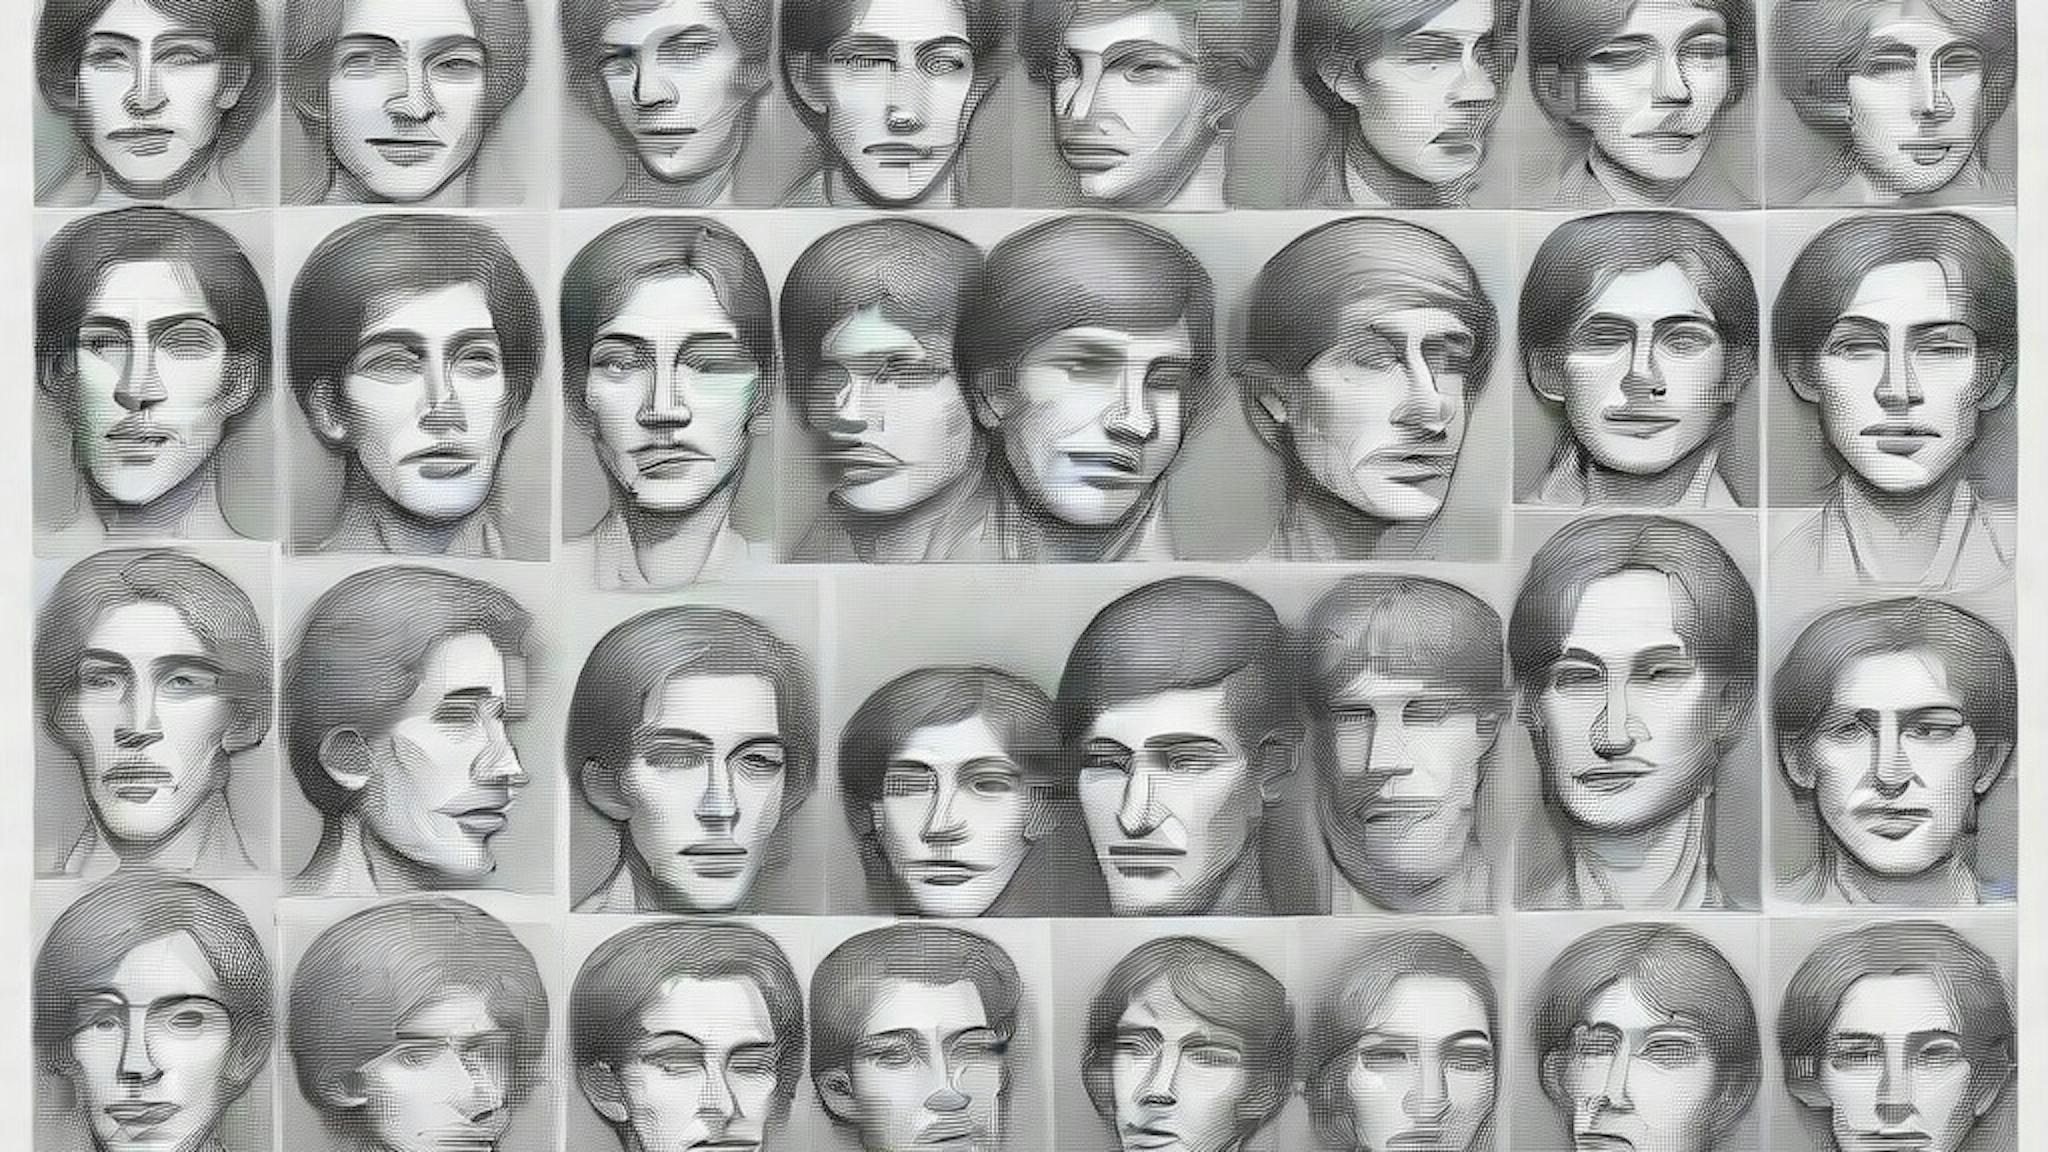 featured image - Tìm kiếm khuôn mặt do AI tạo ra trong tự nhiên: Bộ dữ liệu